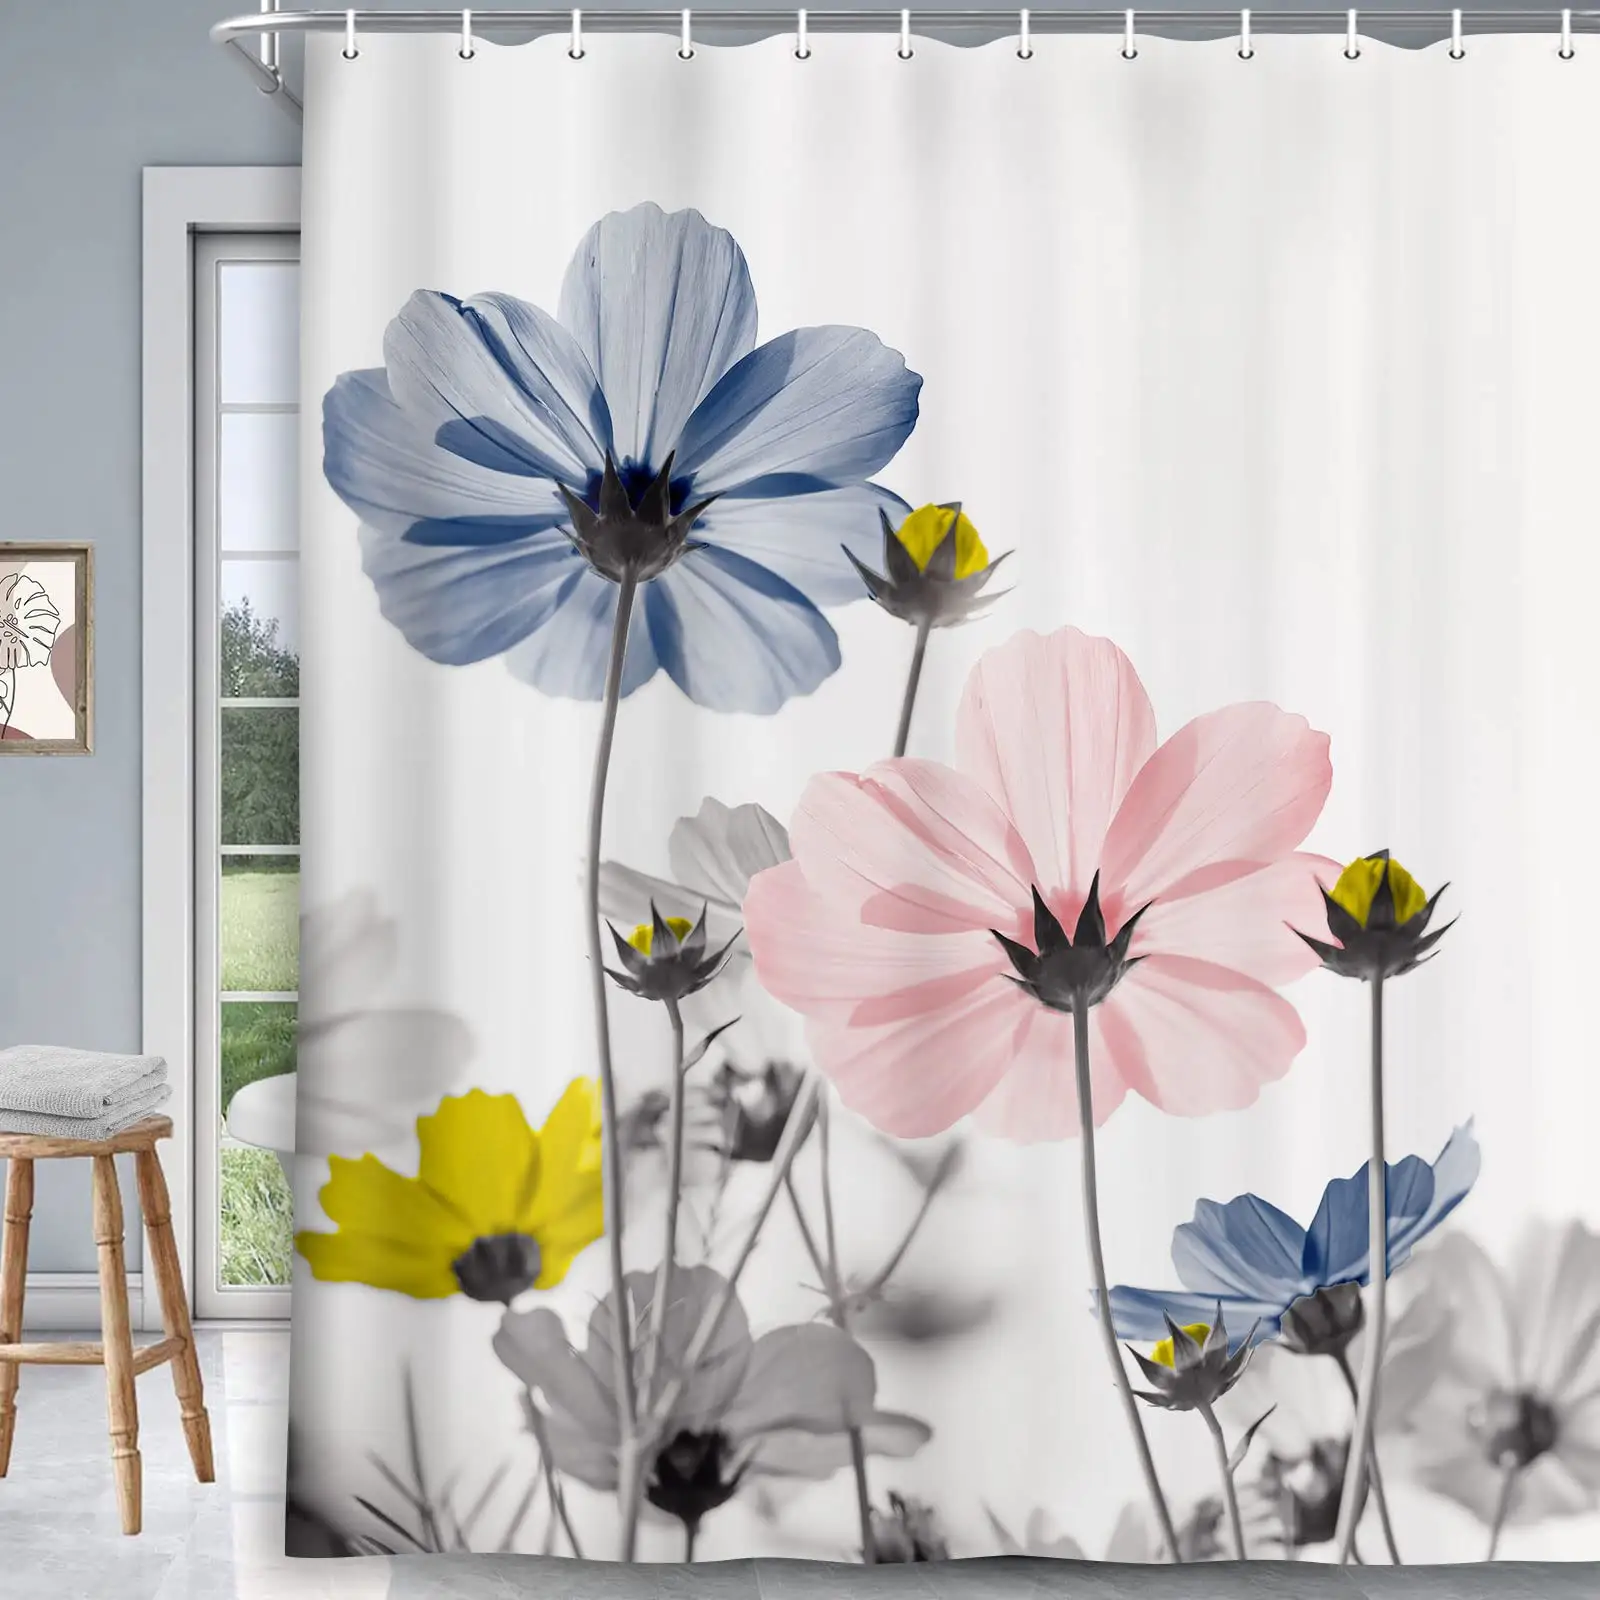 Benzersiz çiçek Teal ve gri papatya çiçek zarif Wildflower tasarım çiftlik duş perdeleri kanca seti ile